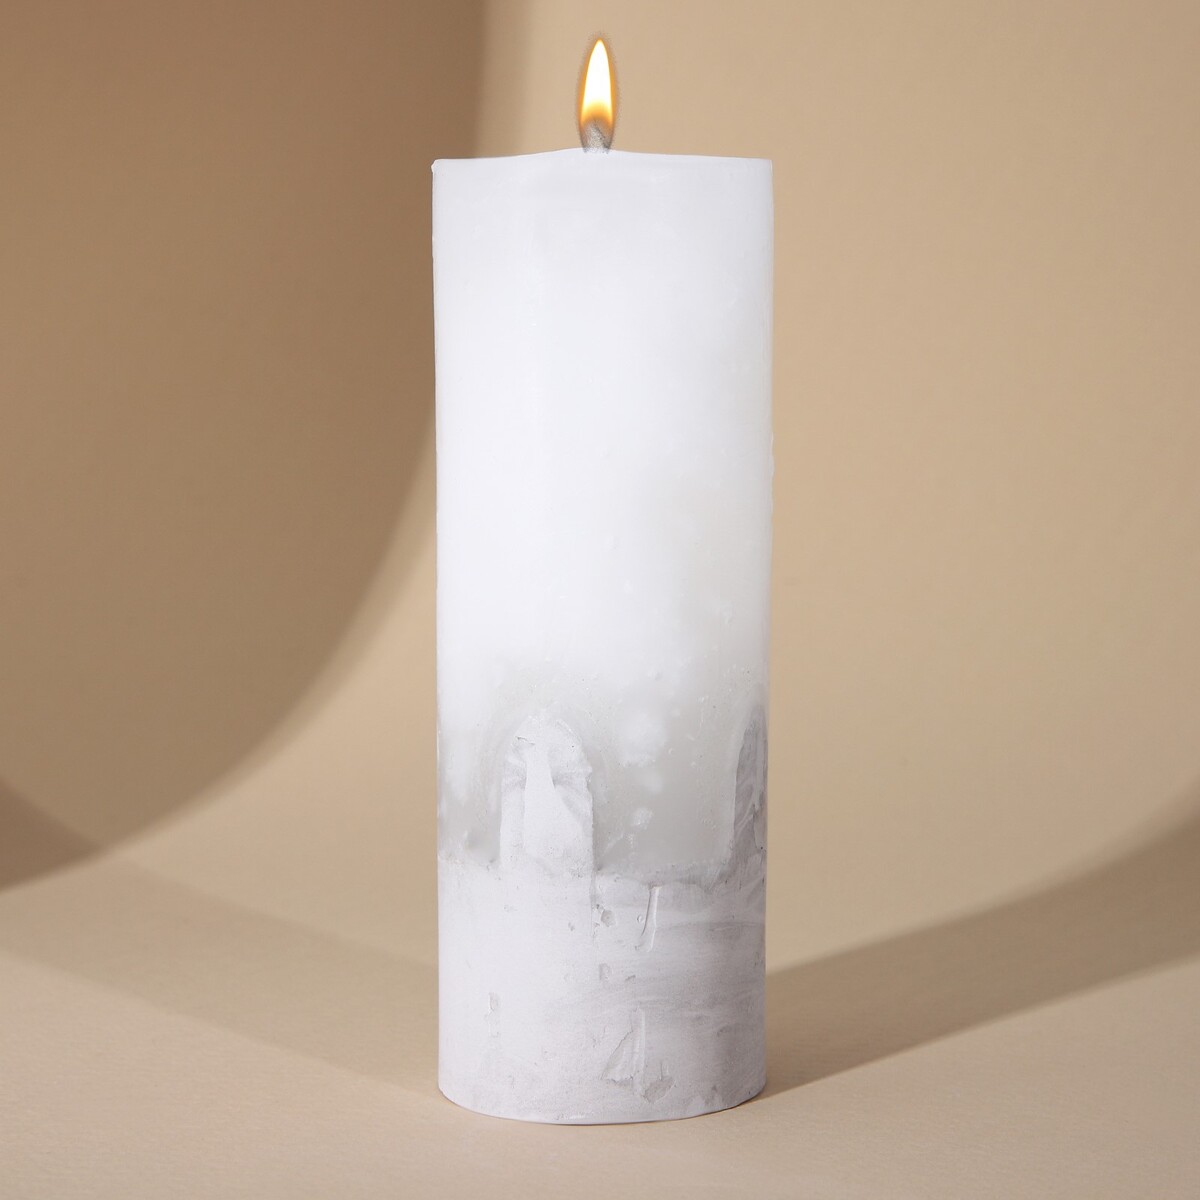 Свеча интерьерная белая с бетоном, 14 х 5 см свеча античная 2 2х26 см пальмовый воск белая 2 ч